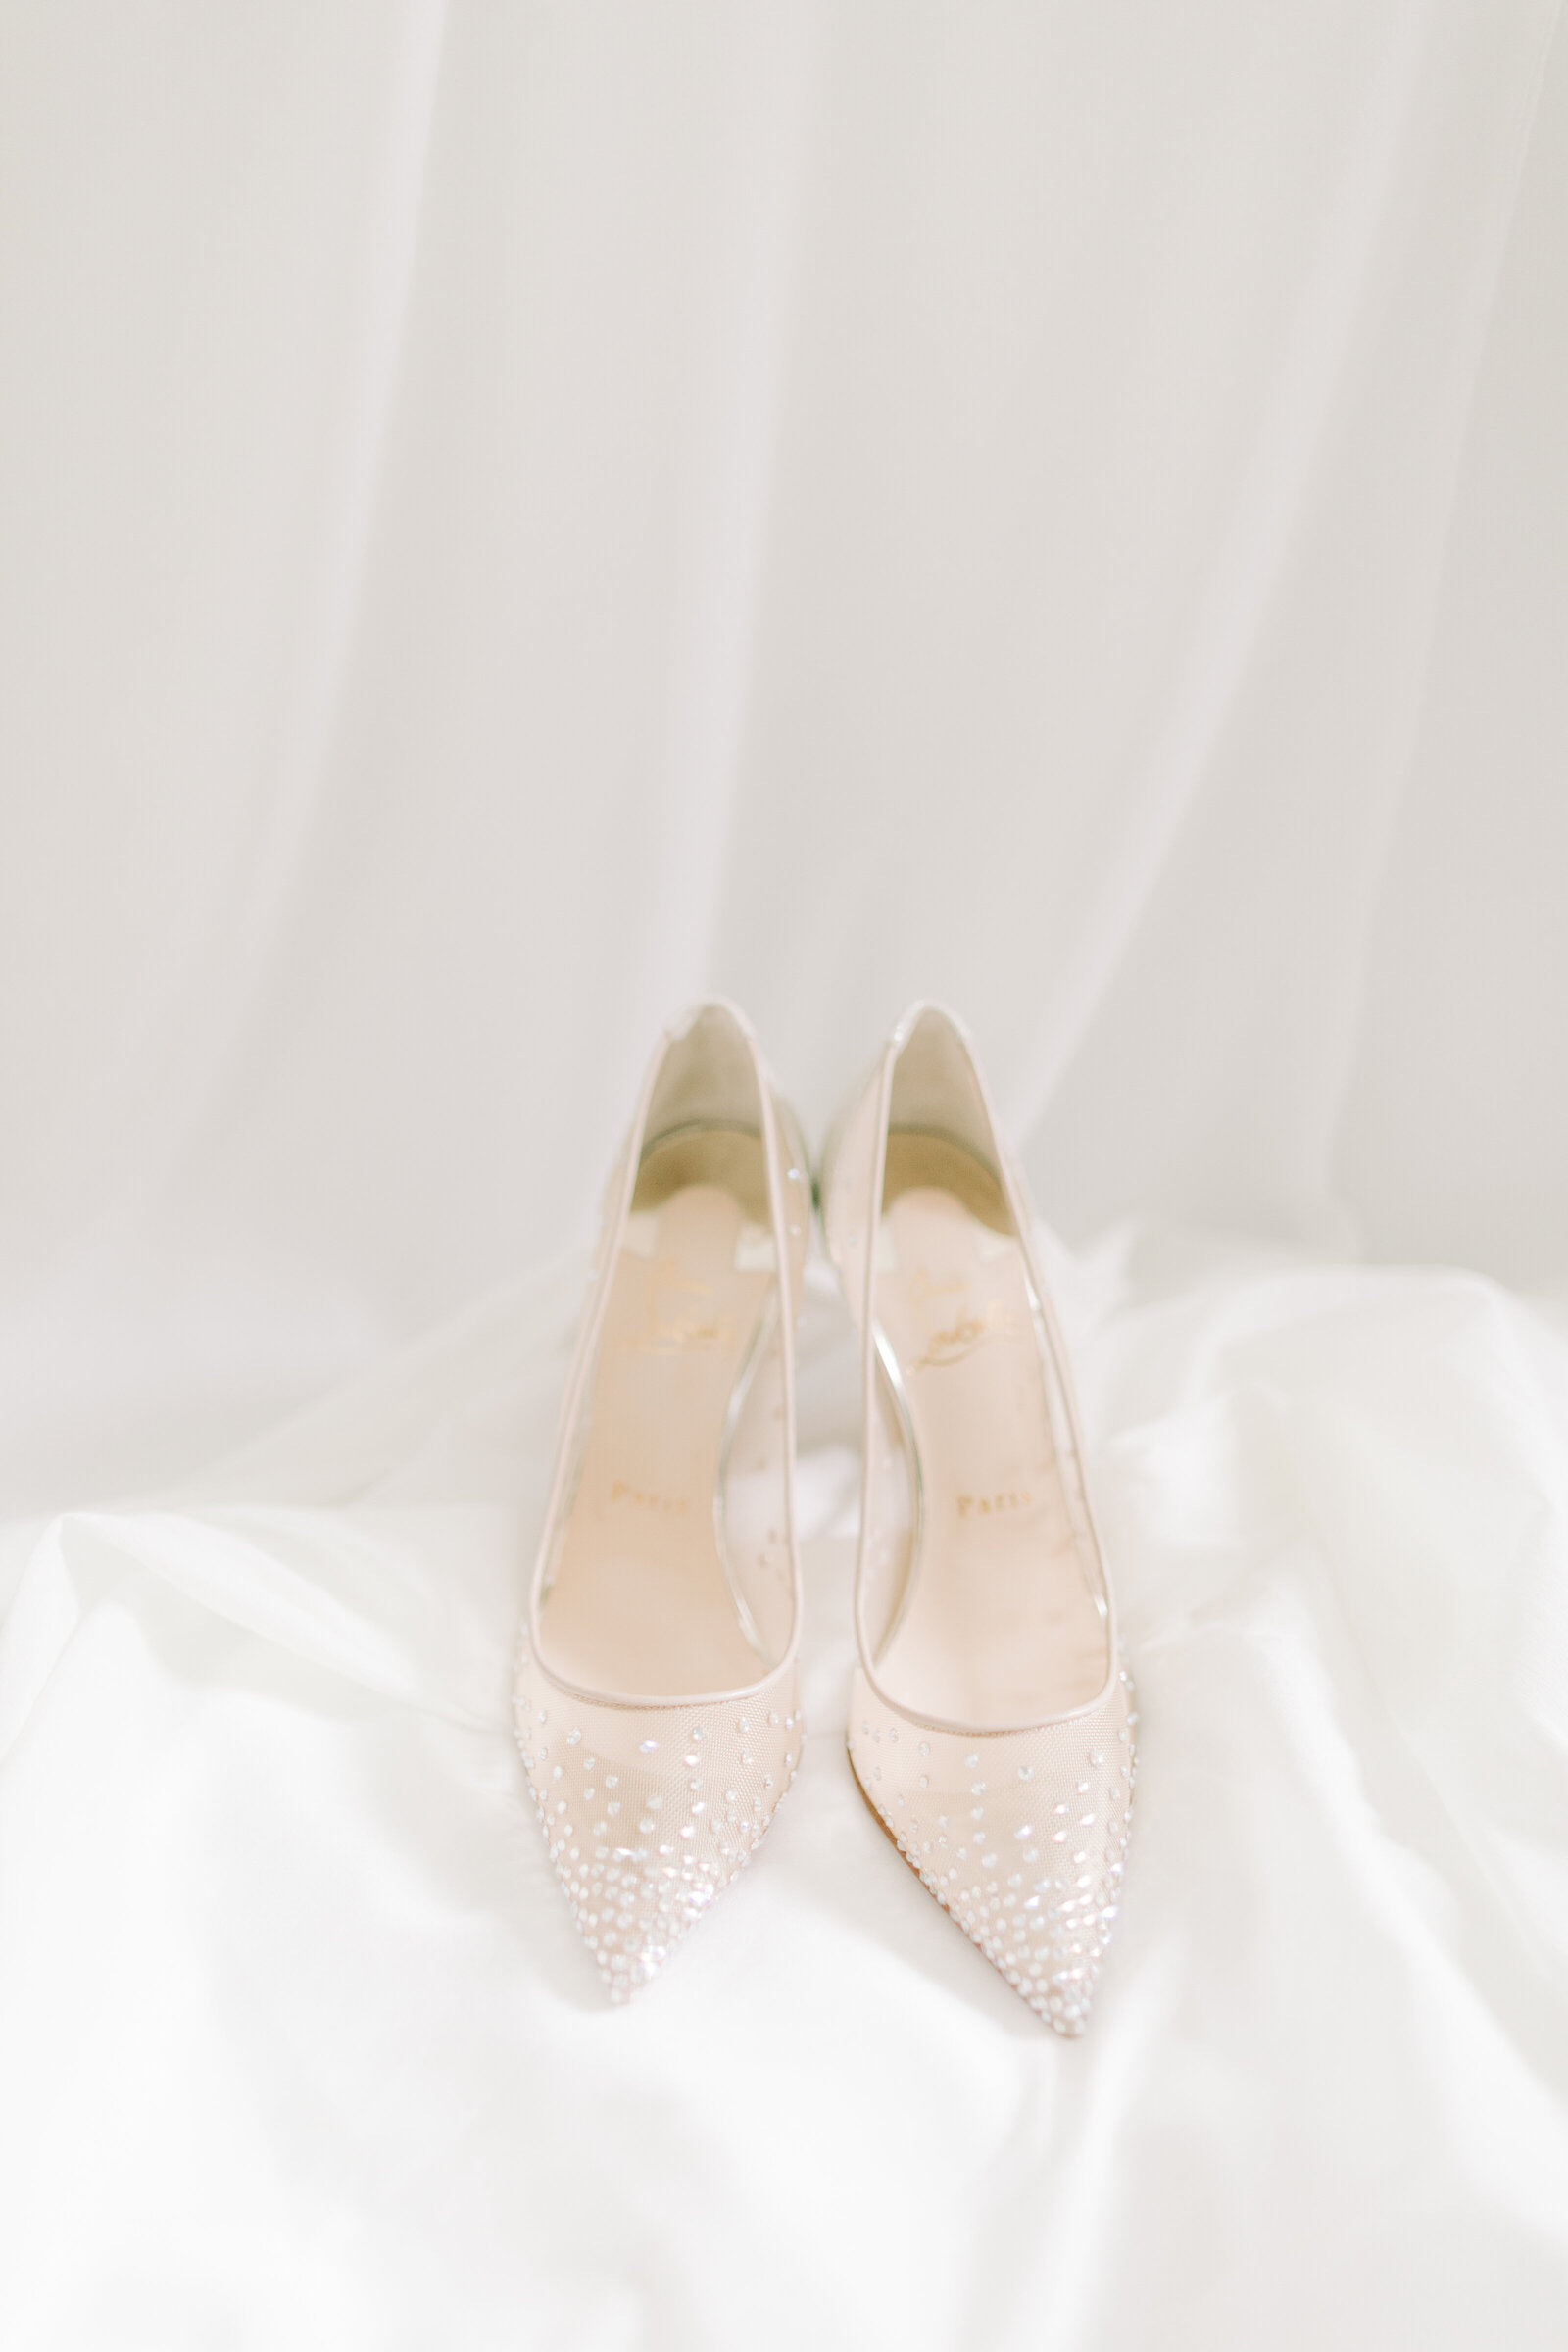 france luxury wedding shoes